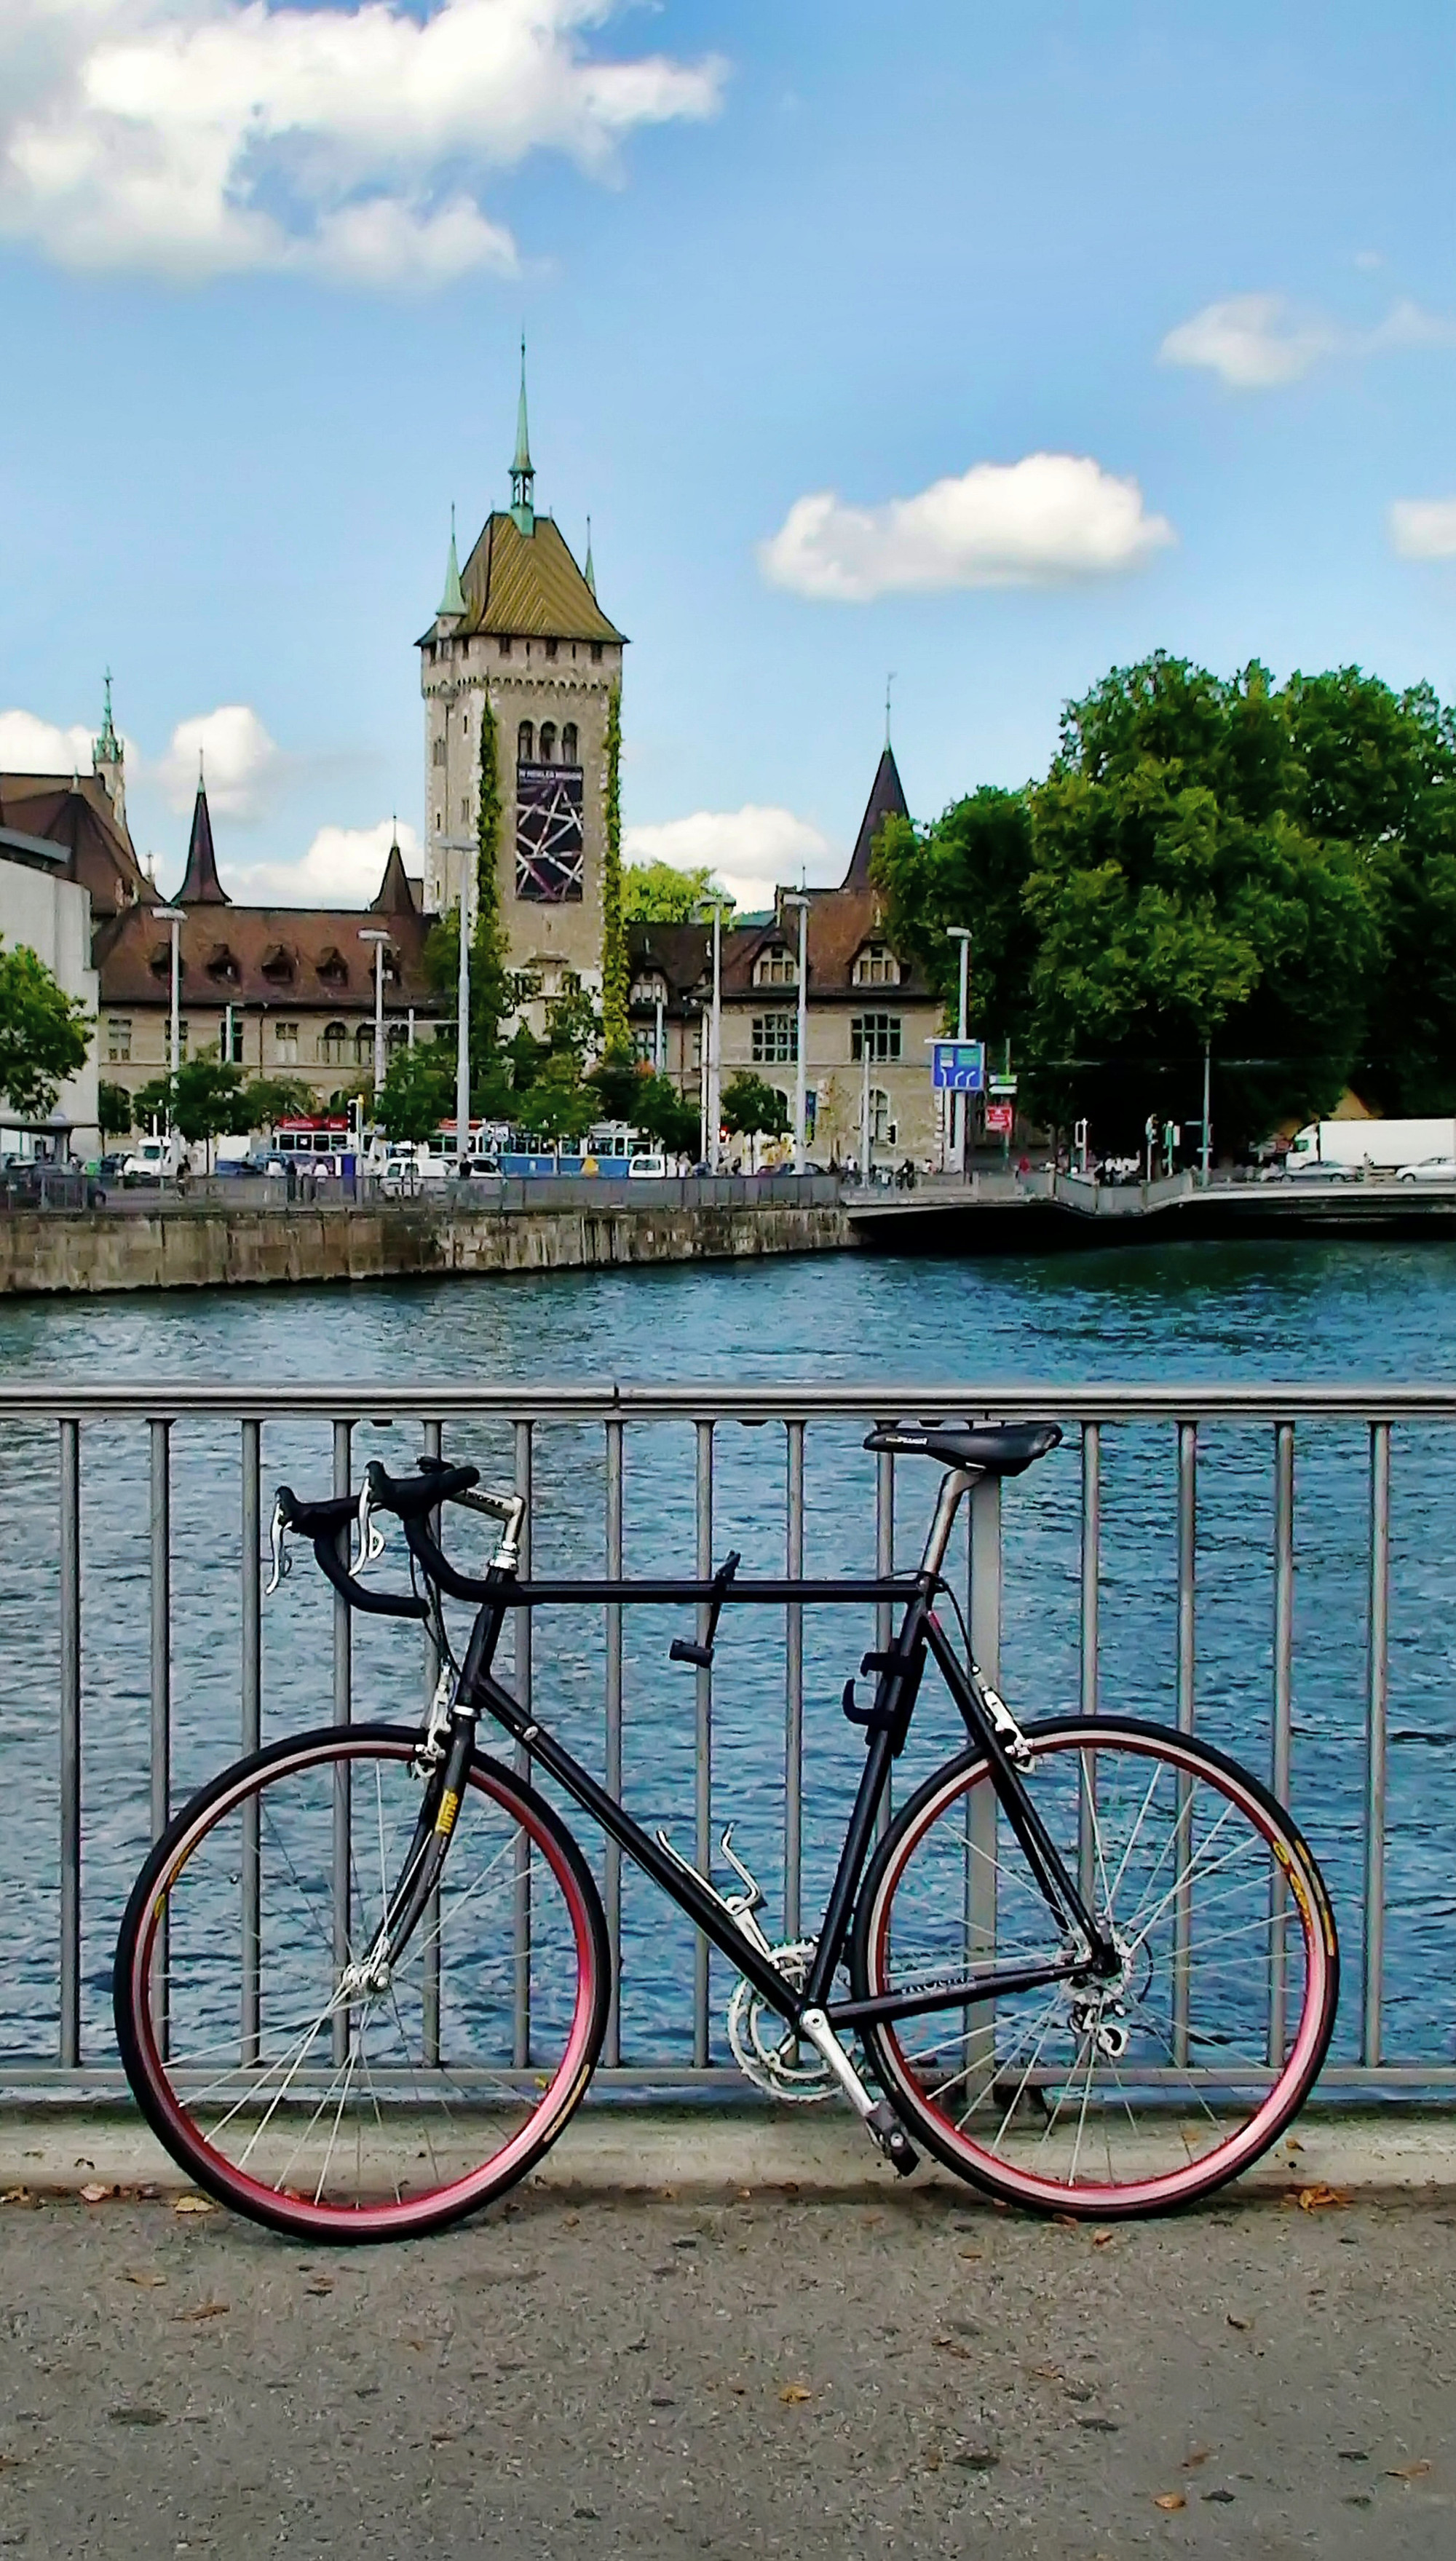 Велосипед и Швейцарский национальный музей Цюриха.